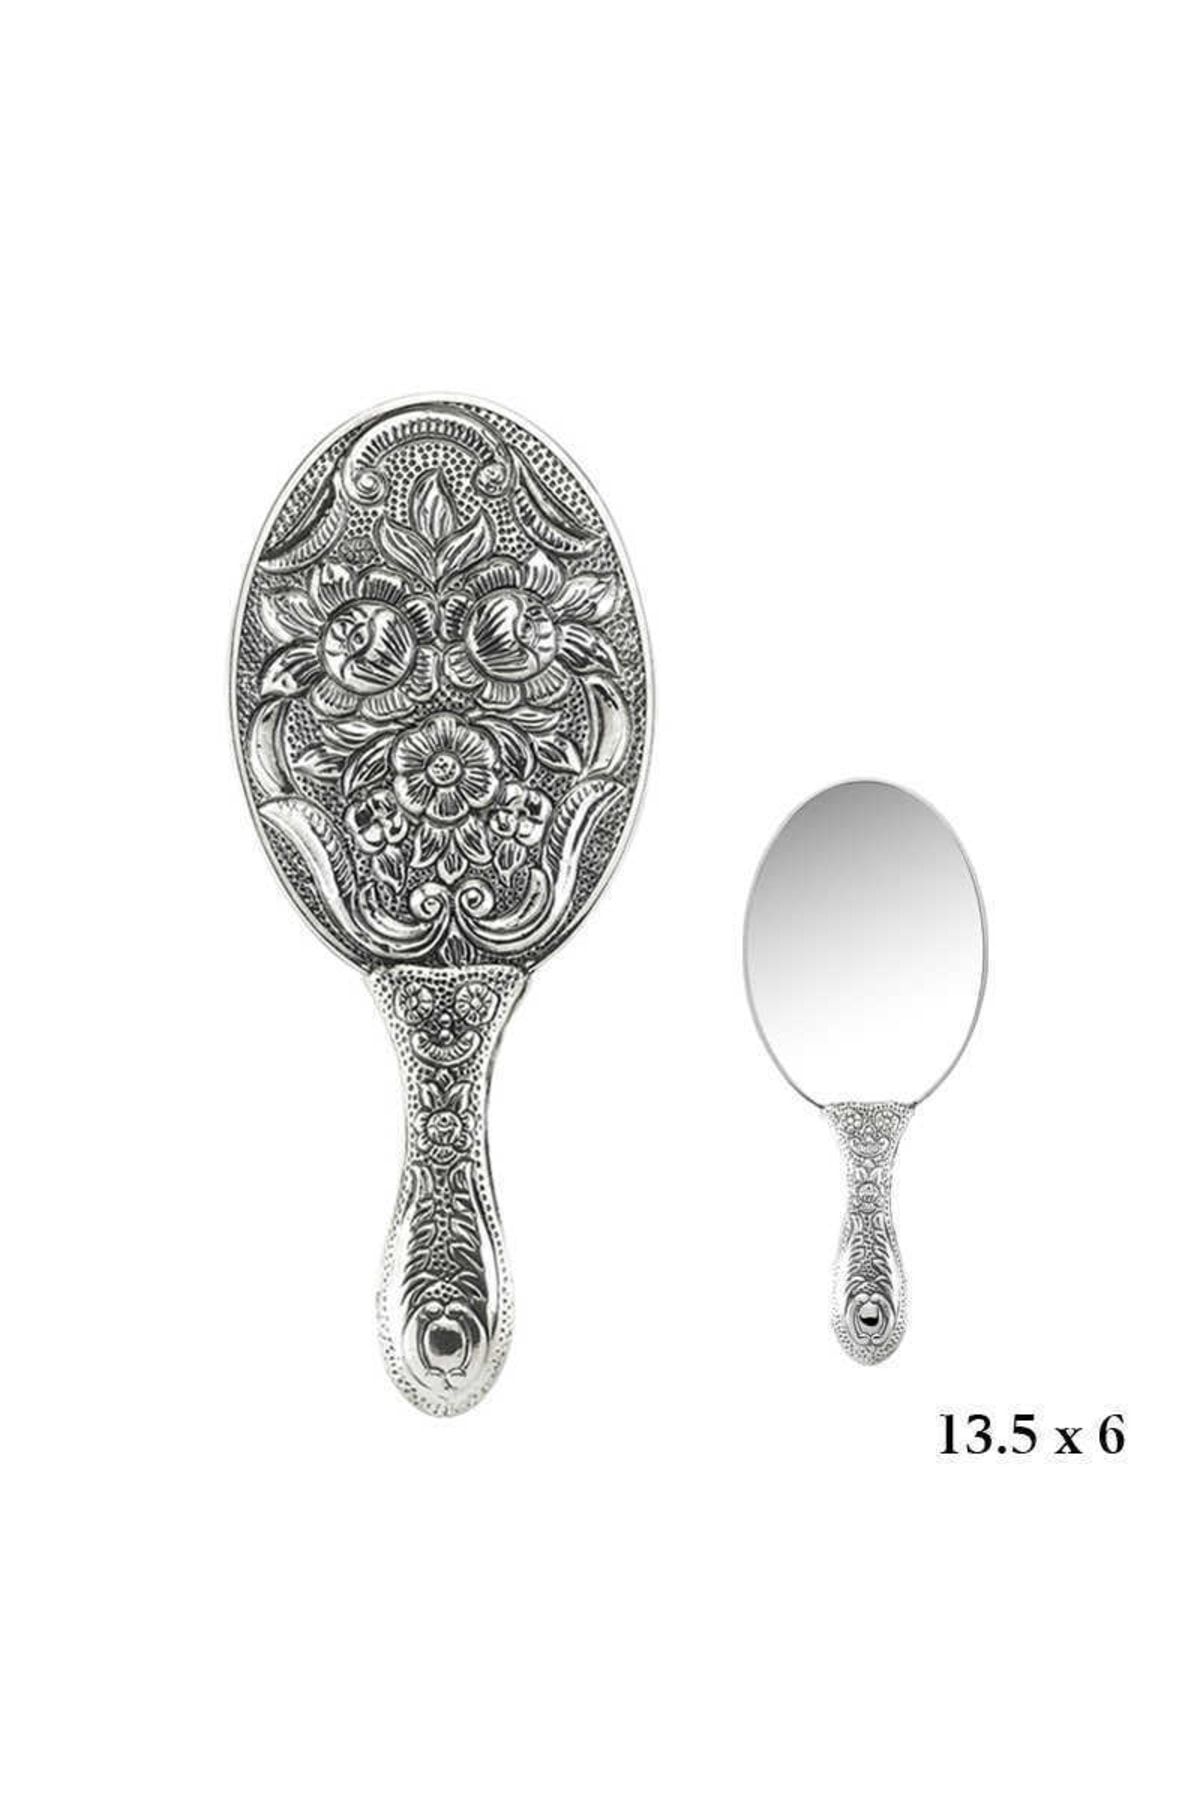 Gumush - Manolya Motifli Gümüş El Aynası